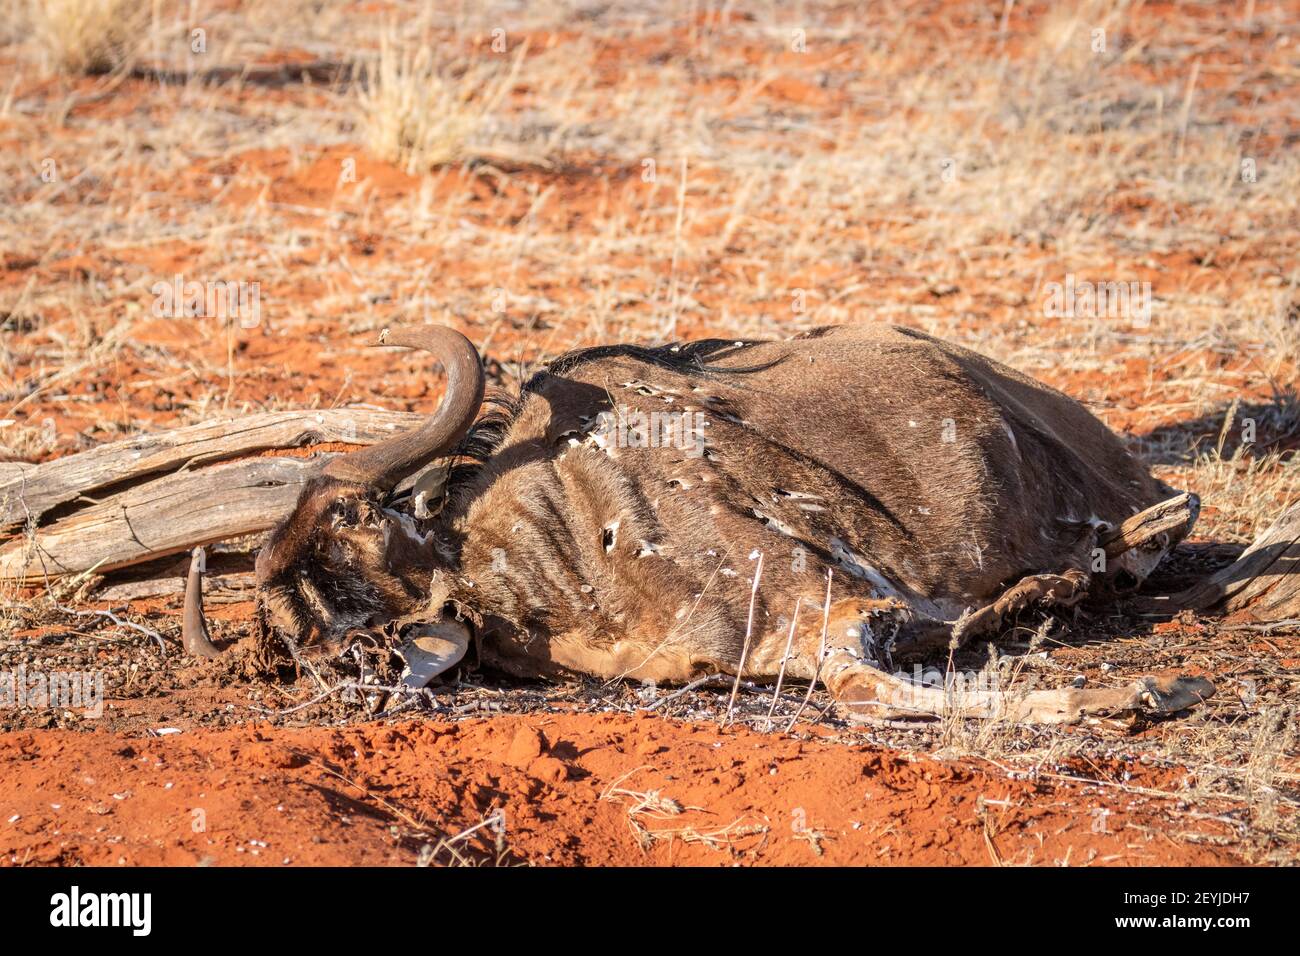 Una vaca muerta en el desierto de kalahari, Namibia. Foto de stock